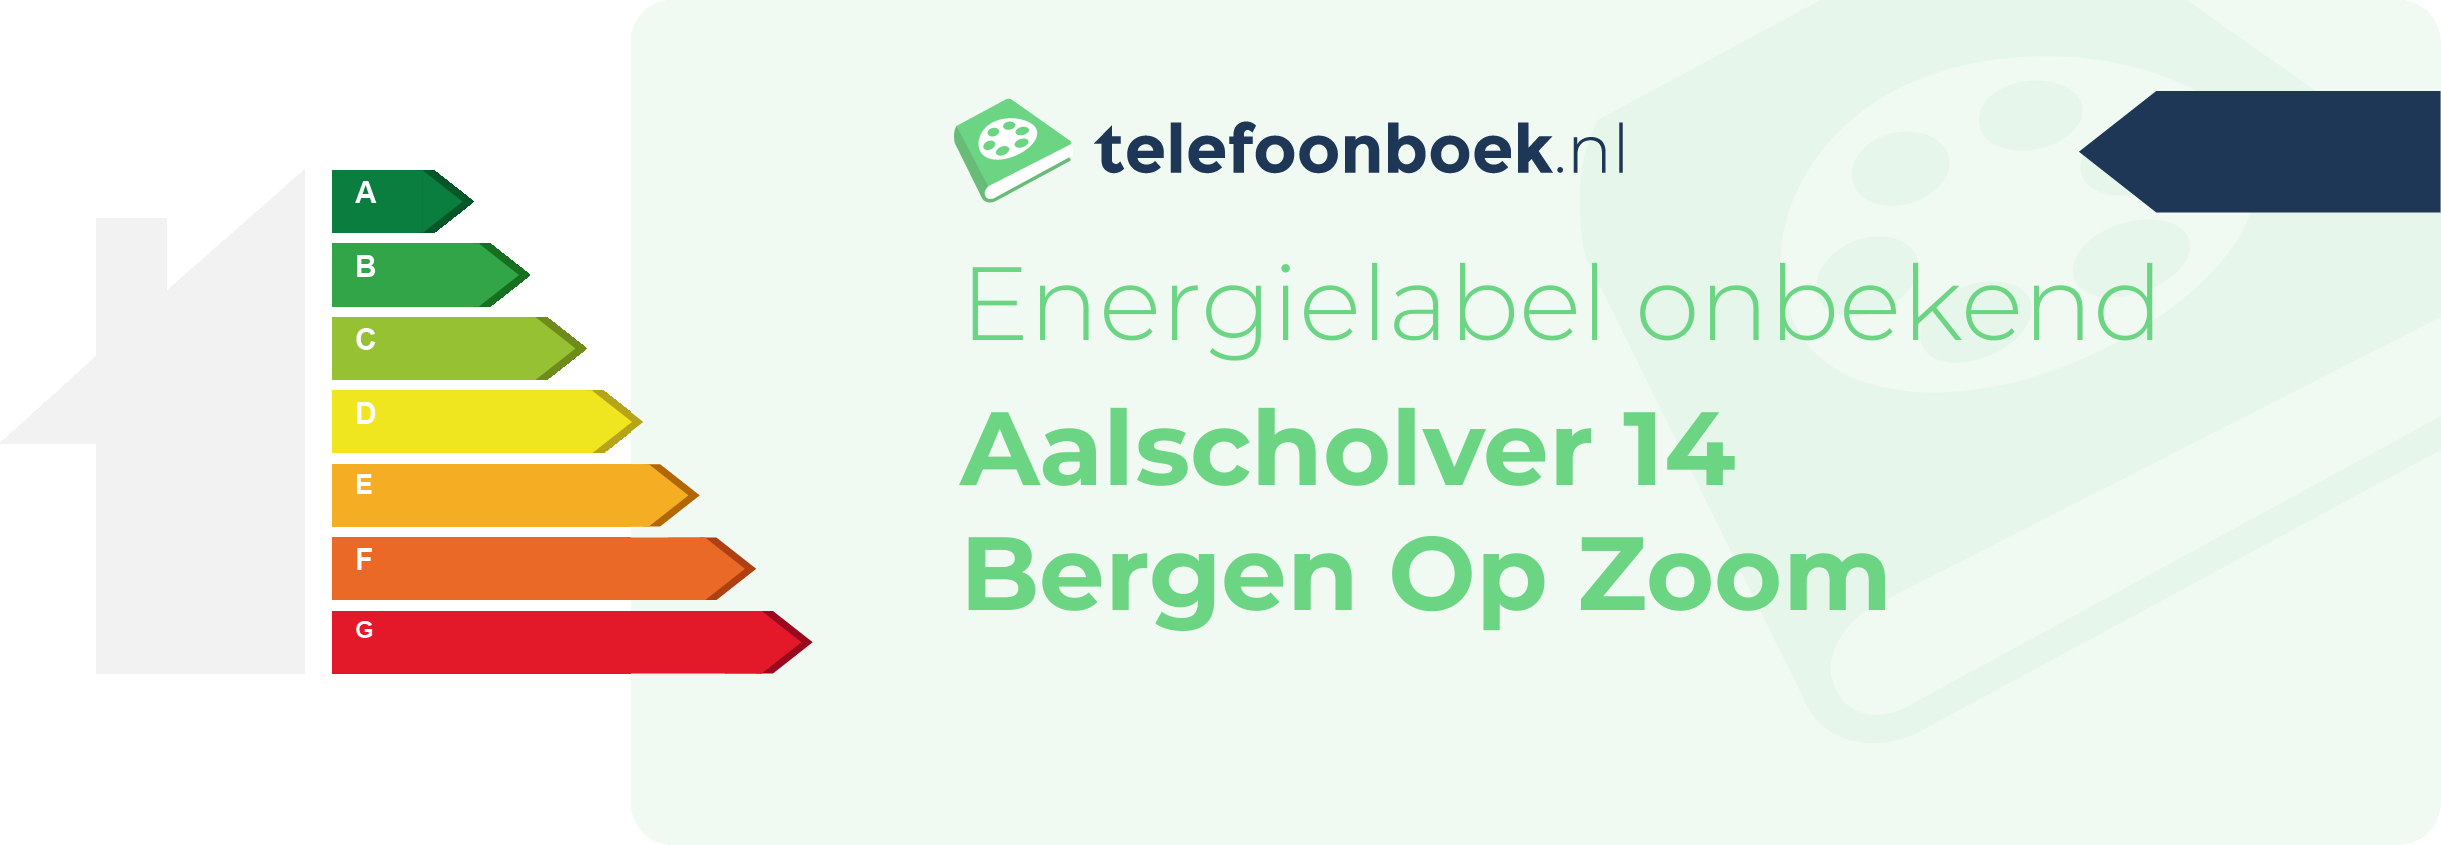 Energielabel Aalscholver 14 Bergen Op Zoom